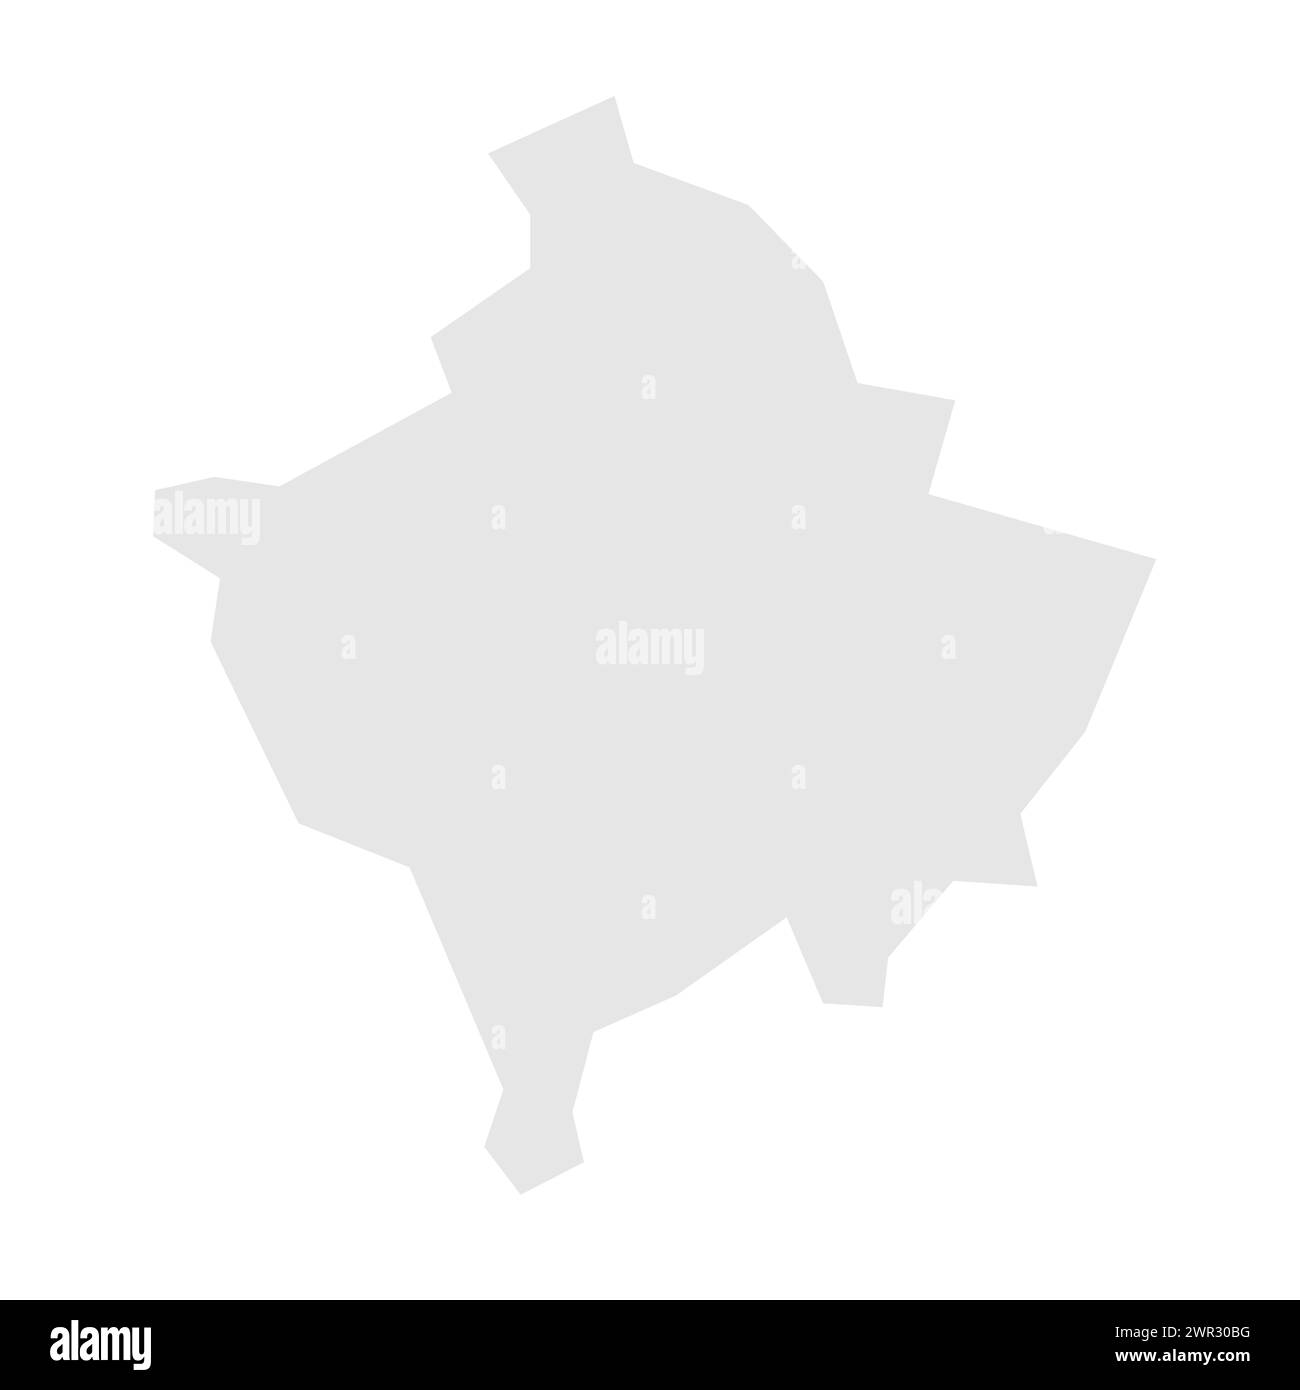 Mappa semplificata del paese del Kosovo. Silhouette in grigio chiaro con angoli vivi isolati su sfondo bianco. Semplice icona vettoriale Illustrazione Vettoriale